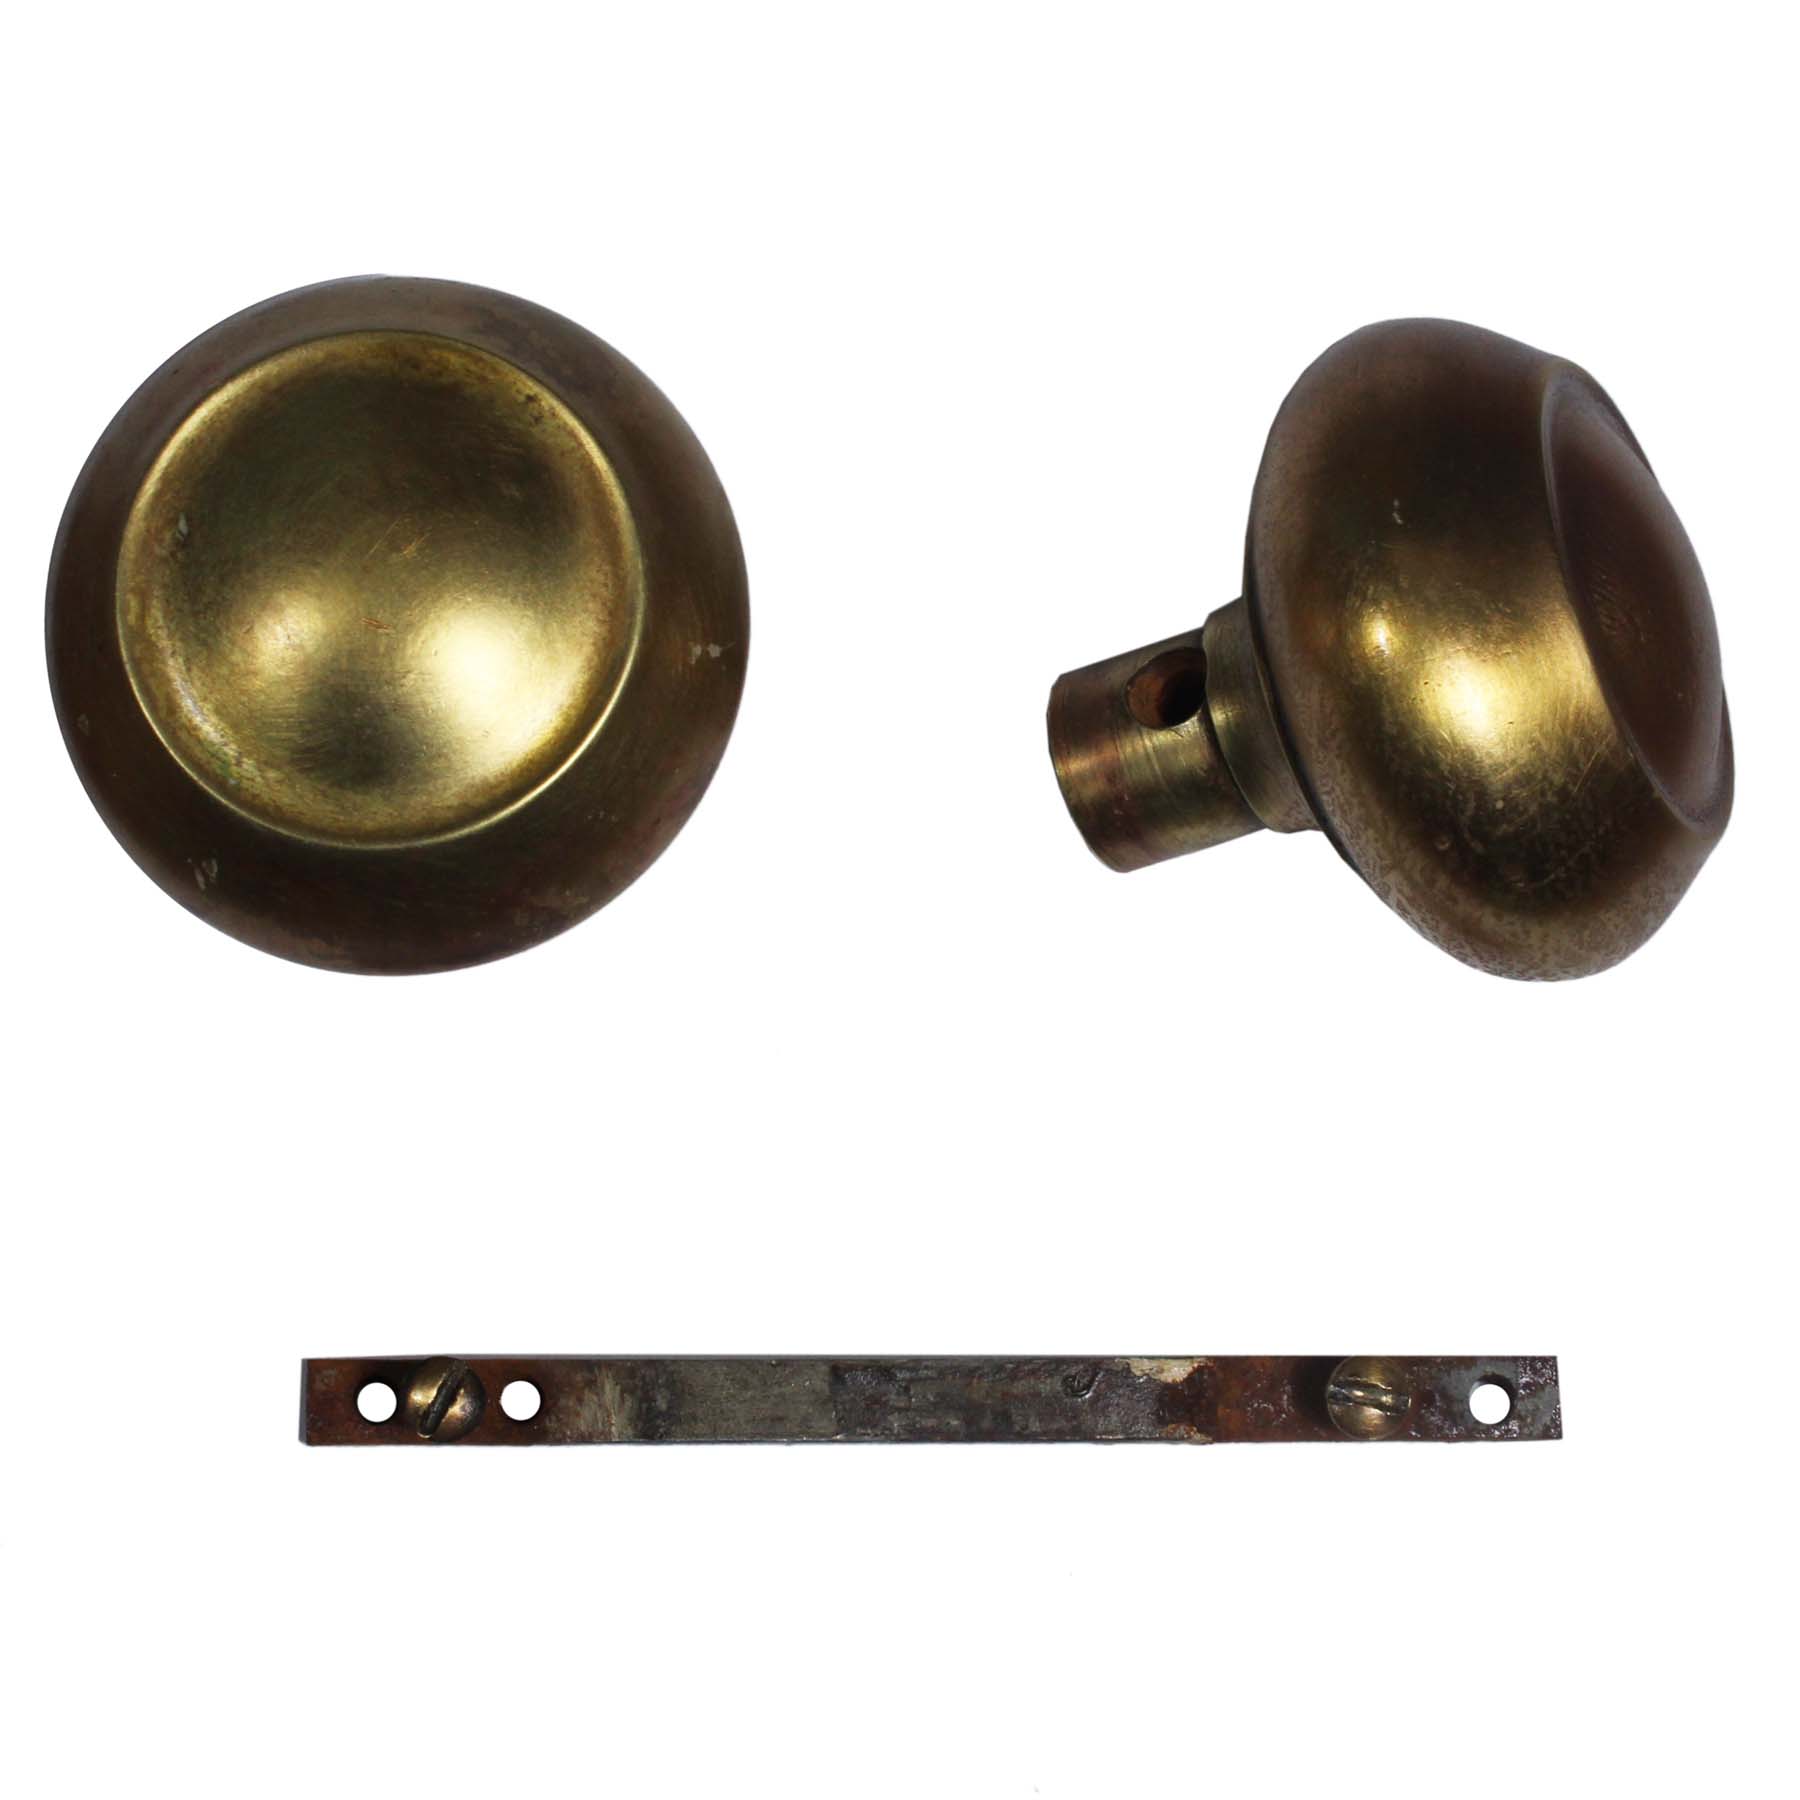 Antique Brass Hardware Sets, c. July 17, 1900-71106